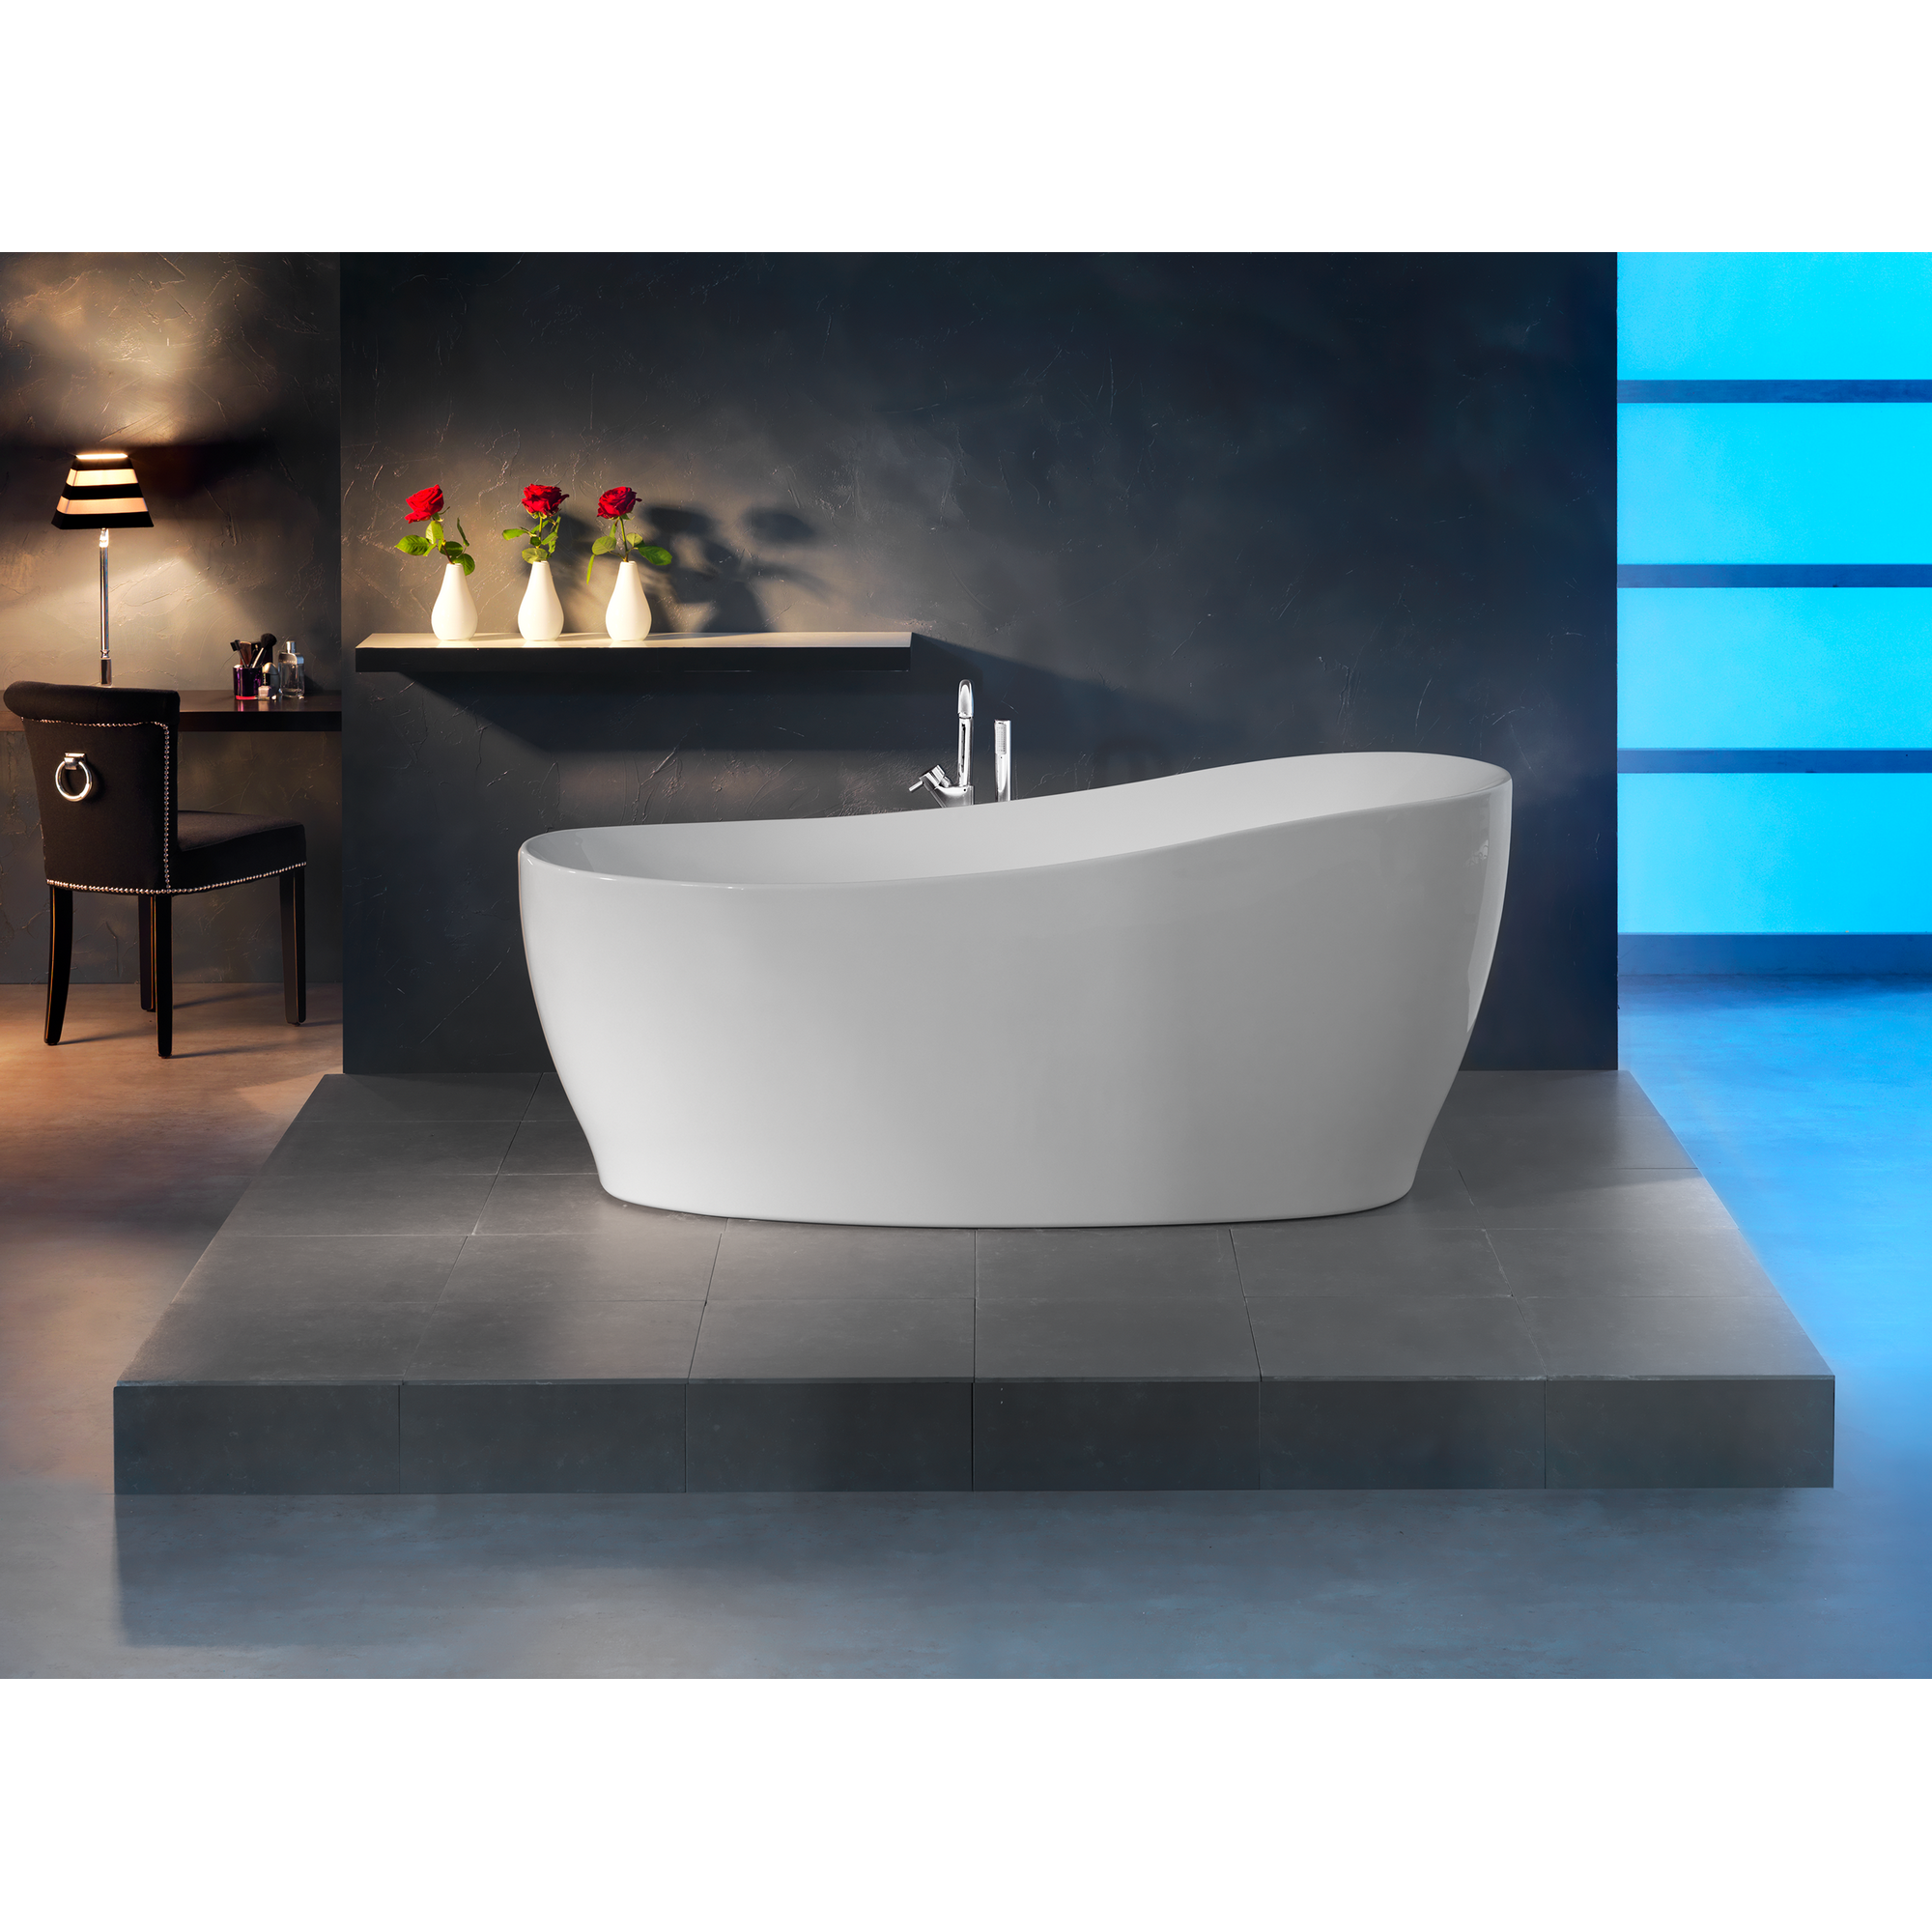 Badewanne 'Aviva' freistehend Sanitäracryl weiß 1800 x 850 mm + product picture